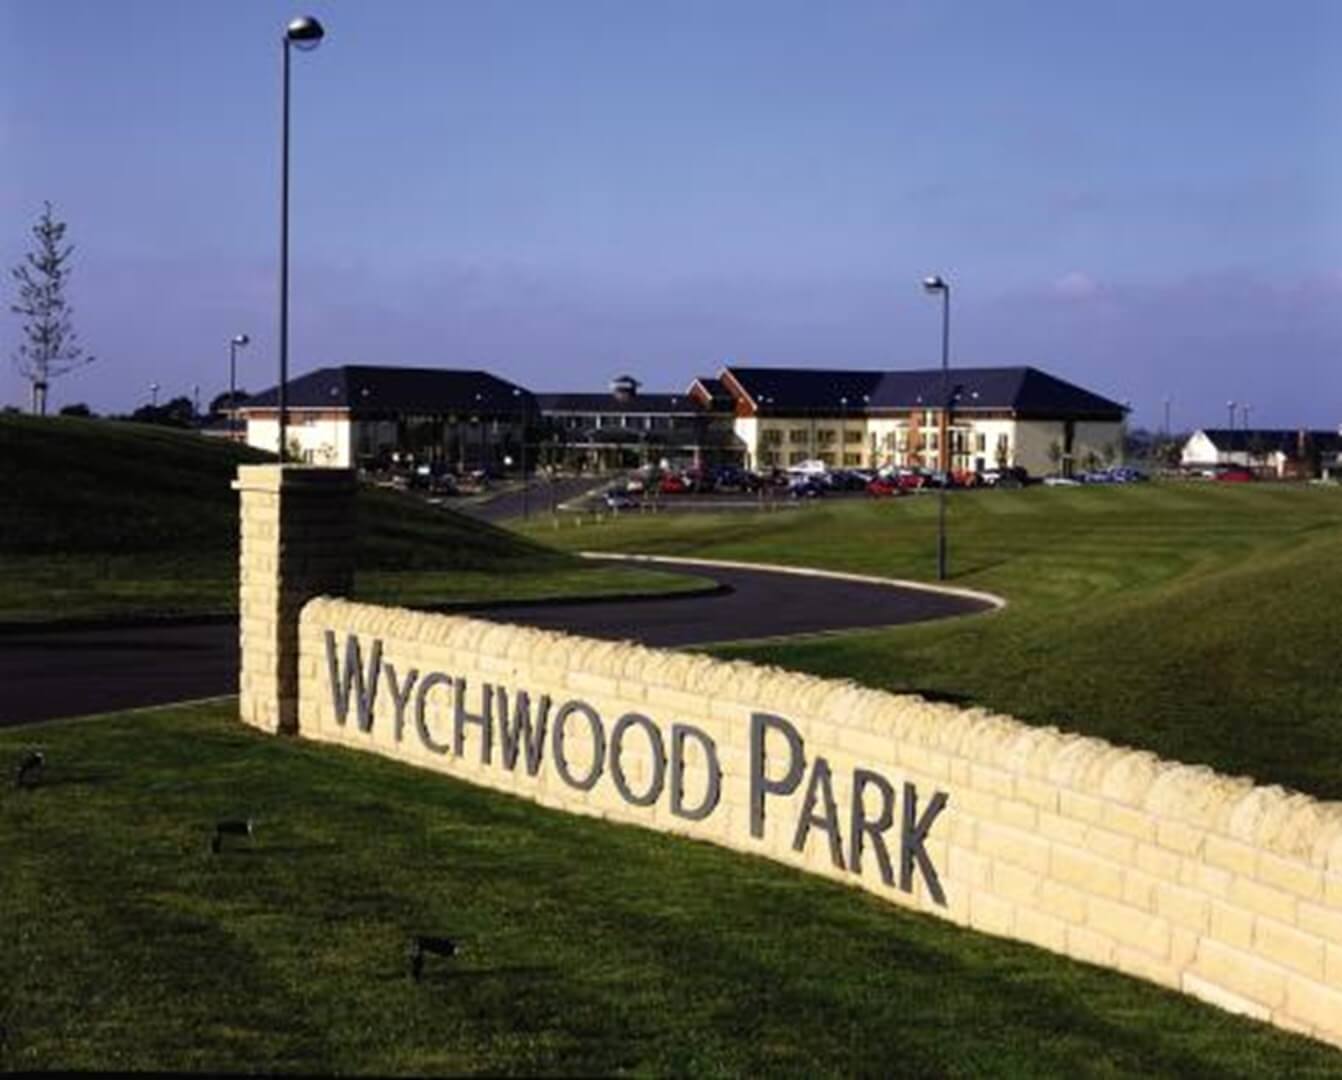 Wychwood park 2